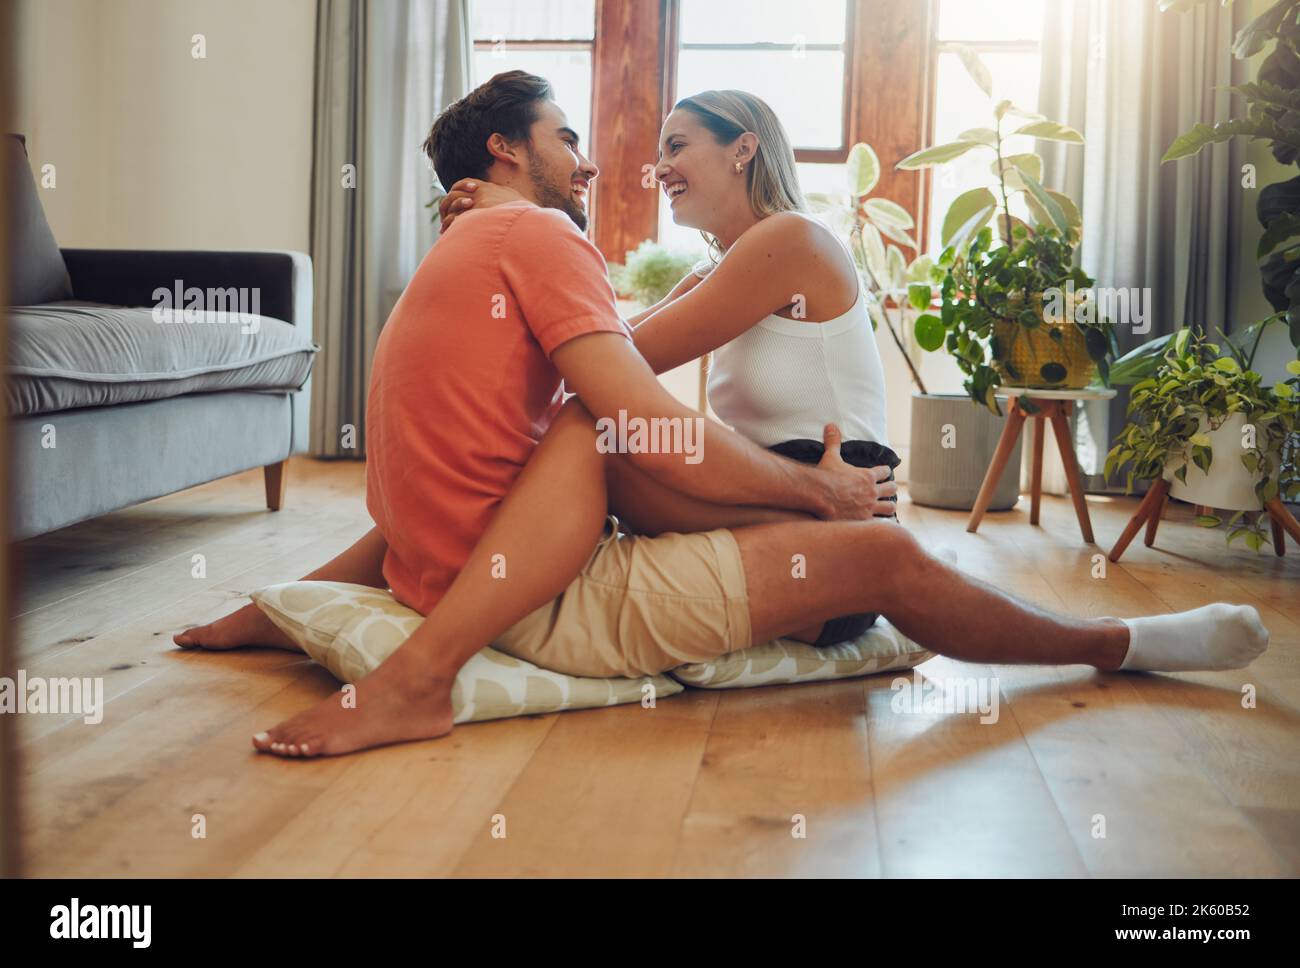 Glückliches kaukasisches Paar, das liebevoll ist und einen romantischen, intimen Moment genießt, während es auf dem Wohnzimmerboden sitzt. Junge Frau sitzt auf Stockfoto